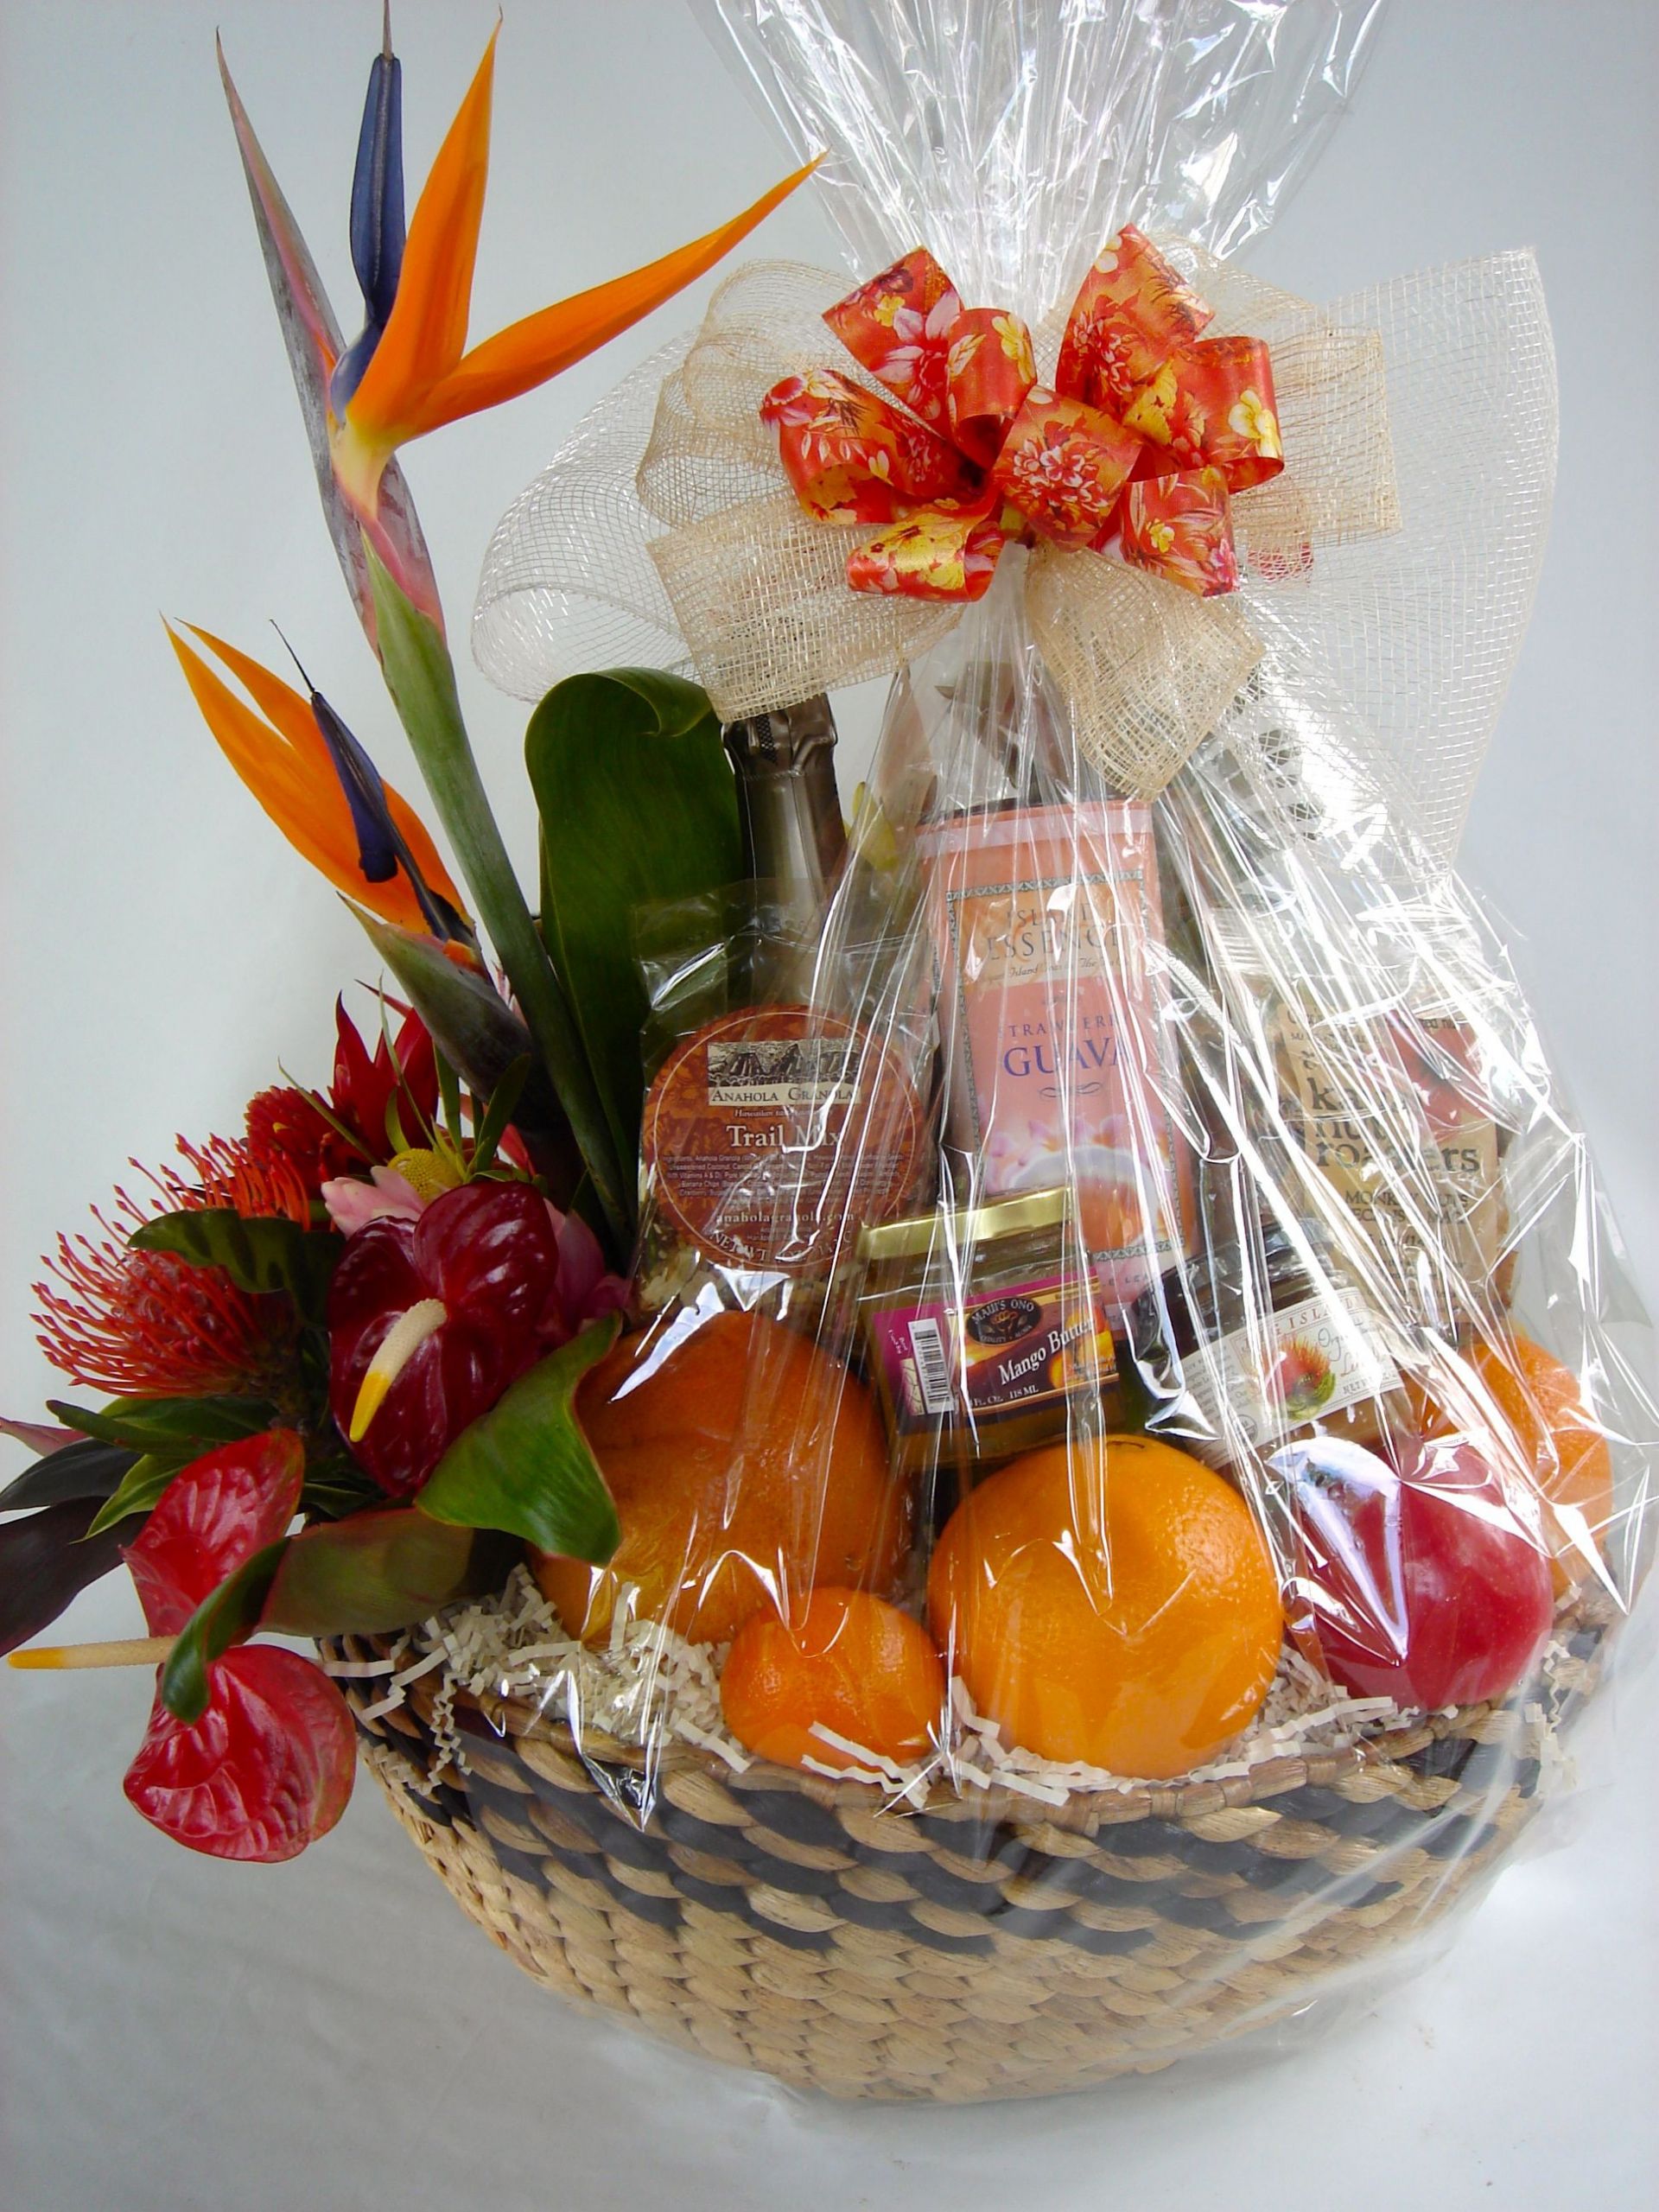 Hawaiian Gift Basket Ideas
 "Tropical Splendor" A unique Hawaiian t basket with